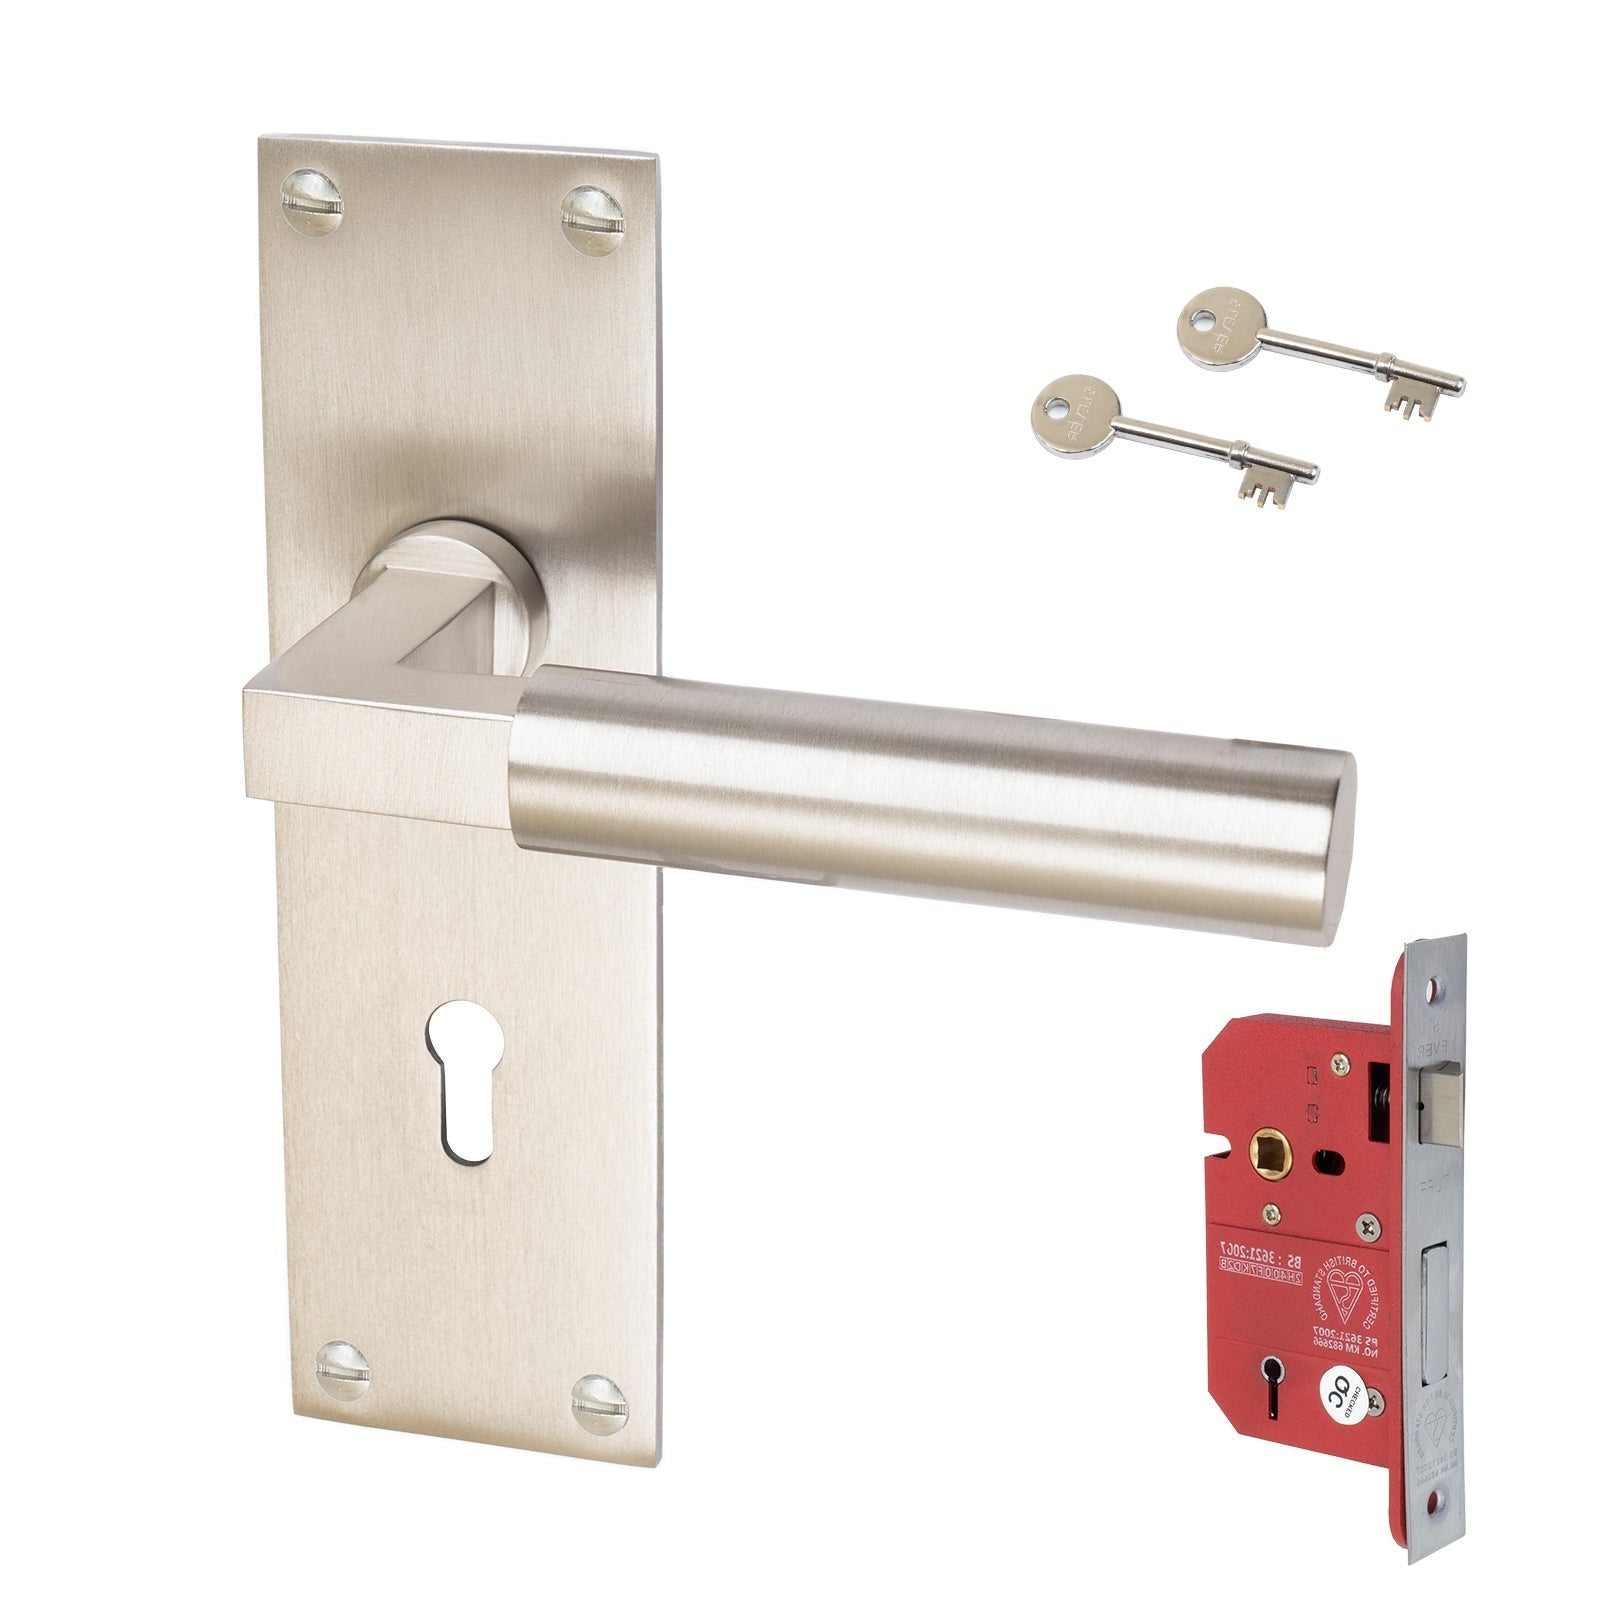 Bauhaus Door Handles On Plate 5 Lever Lock Handle Set in Satin Nickel 